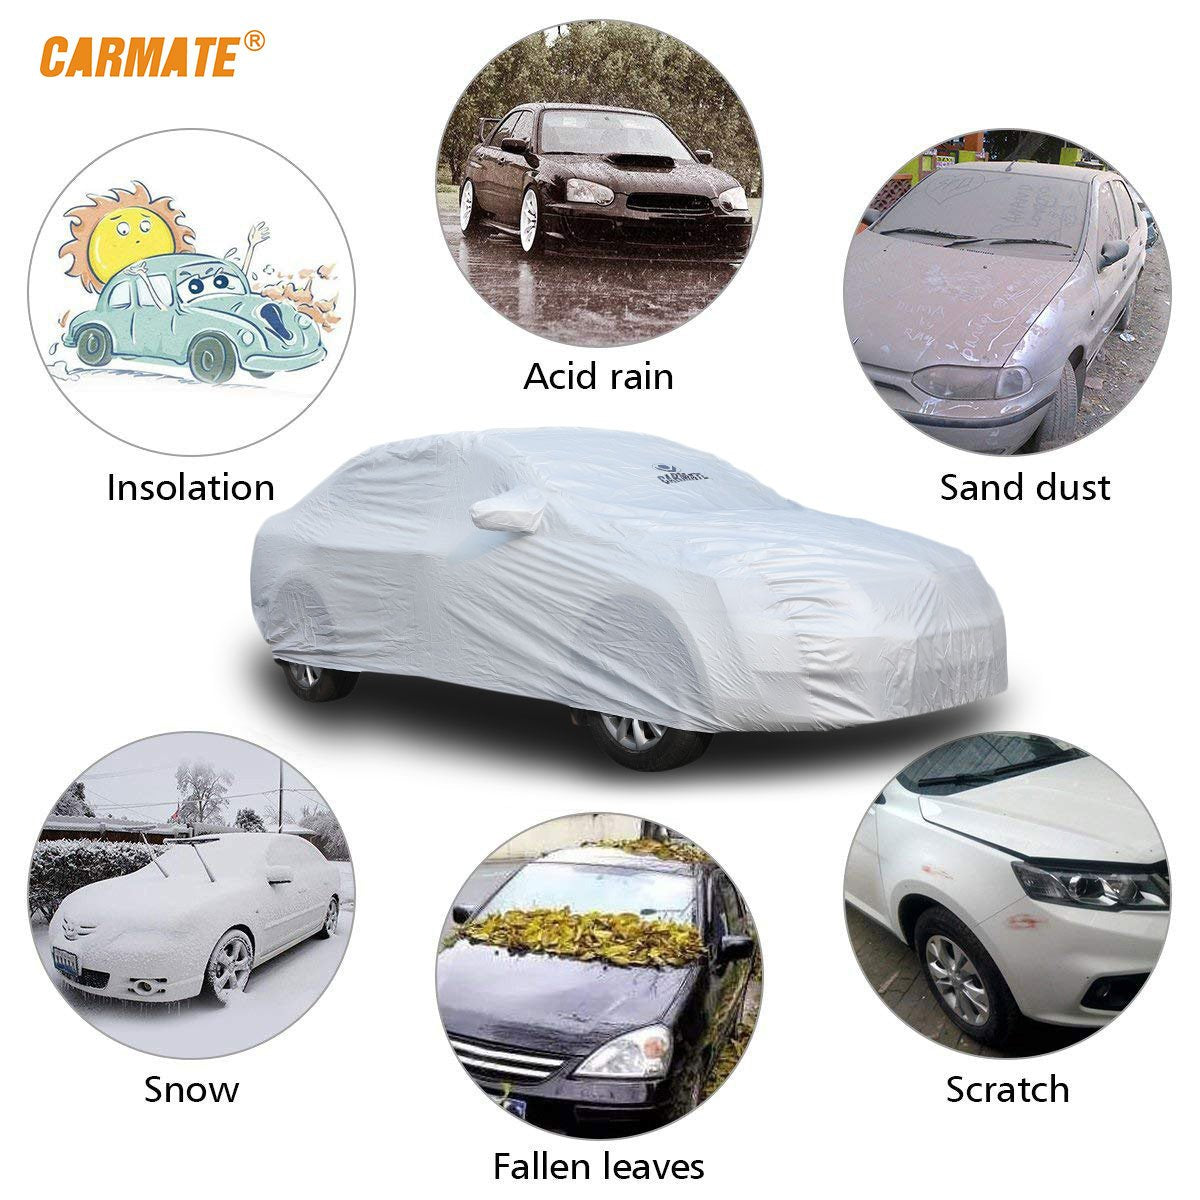 Carmate Premium Car Body Cover Silver Matty (Silver) for  Hyundai - I20 - CARMATE®